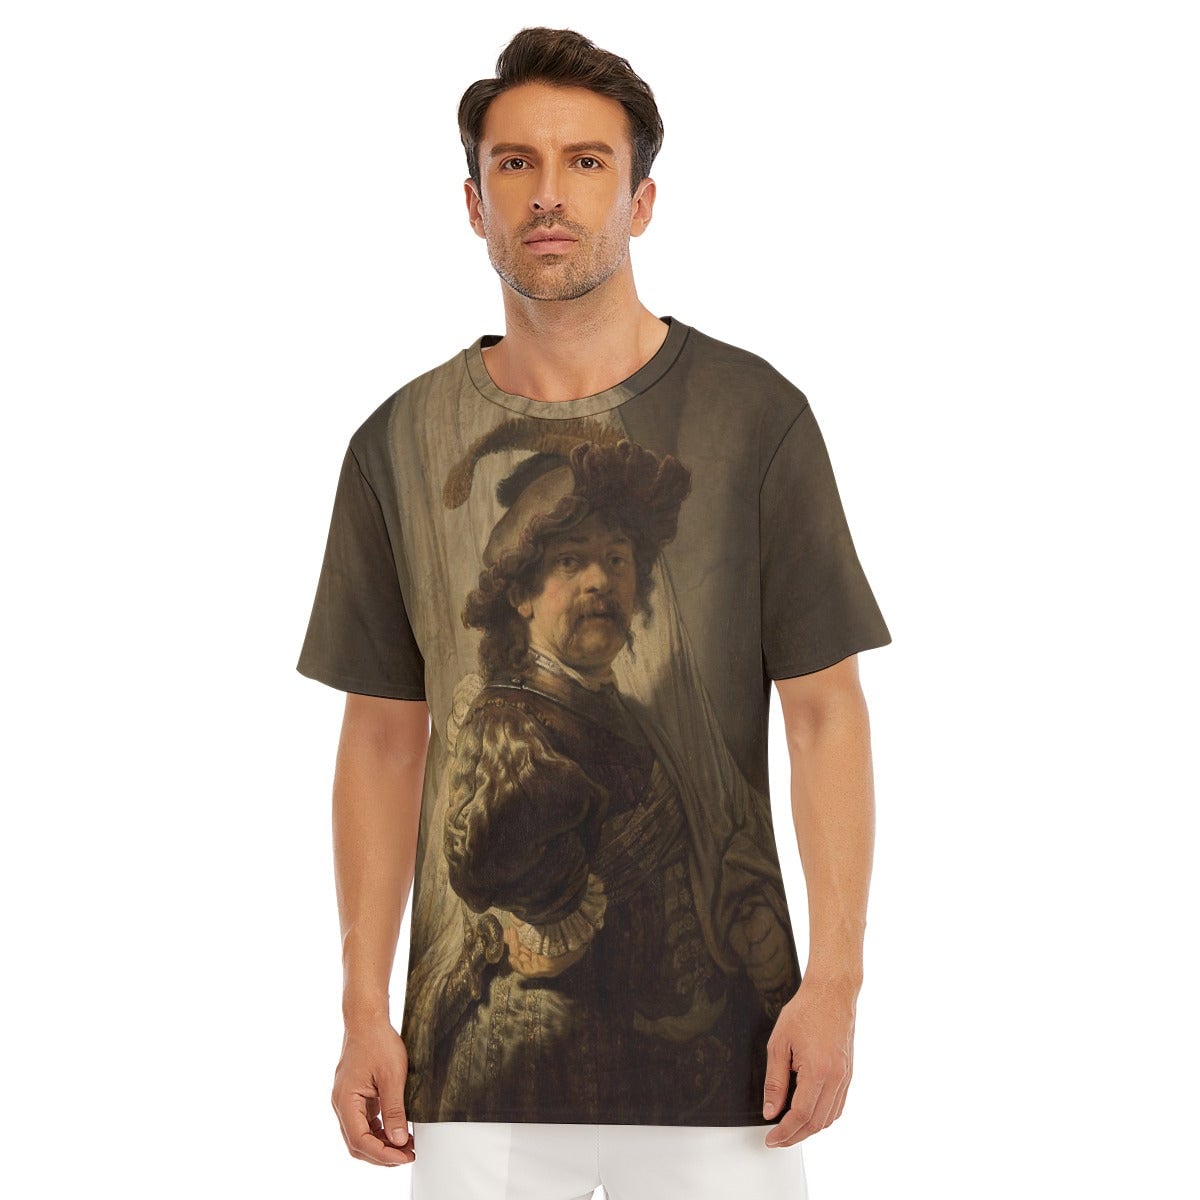 Rembrandt van Rijn’s The Standard Bearer T-Shirt